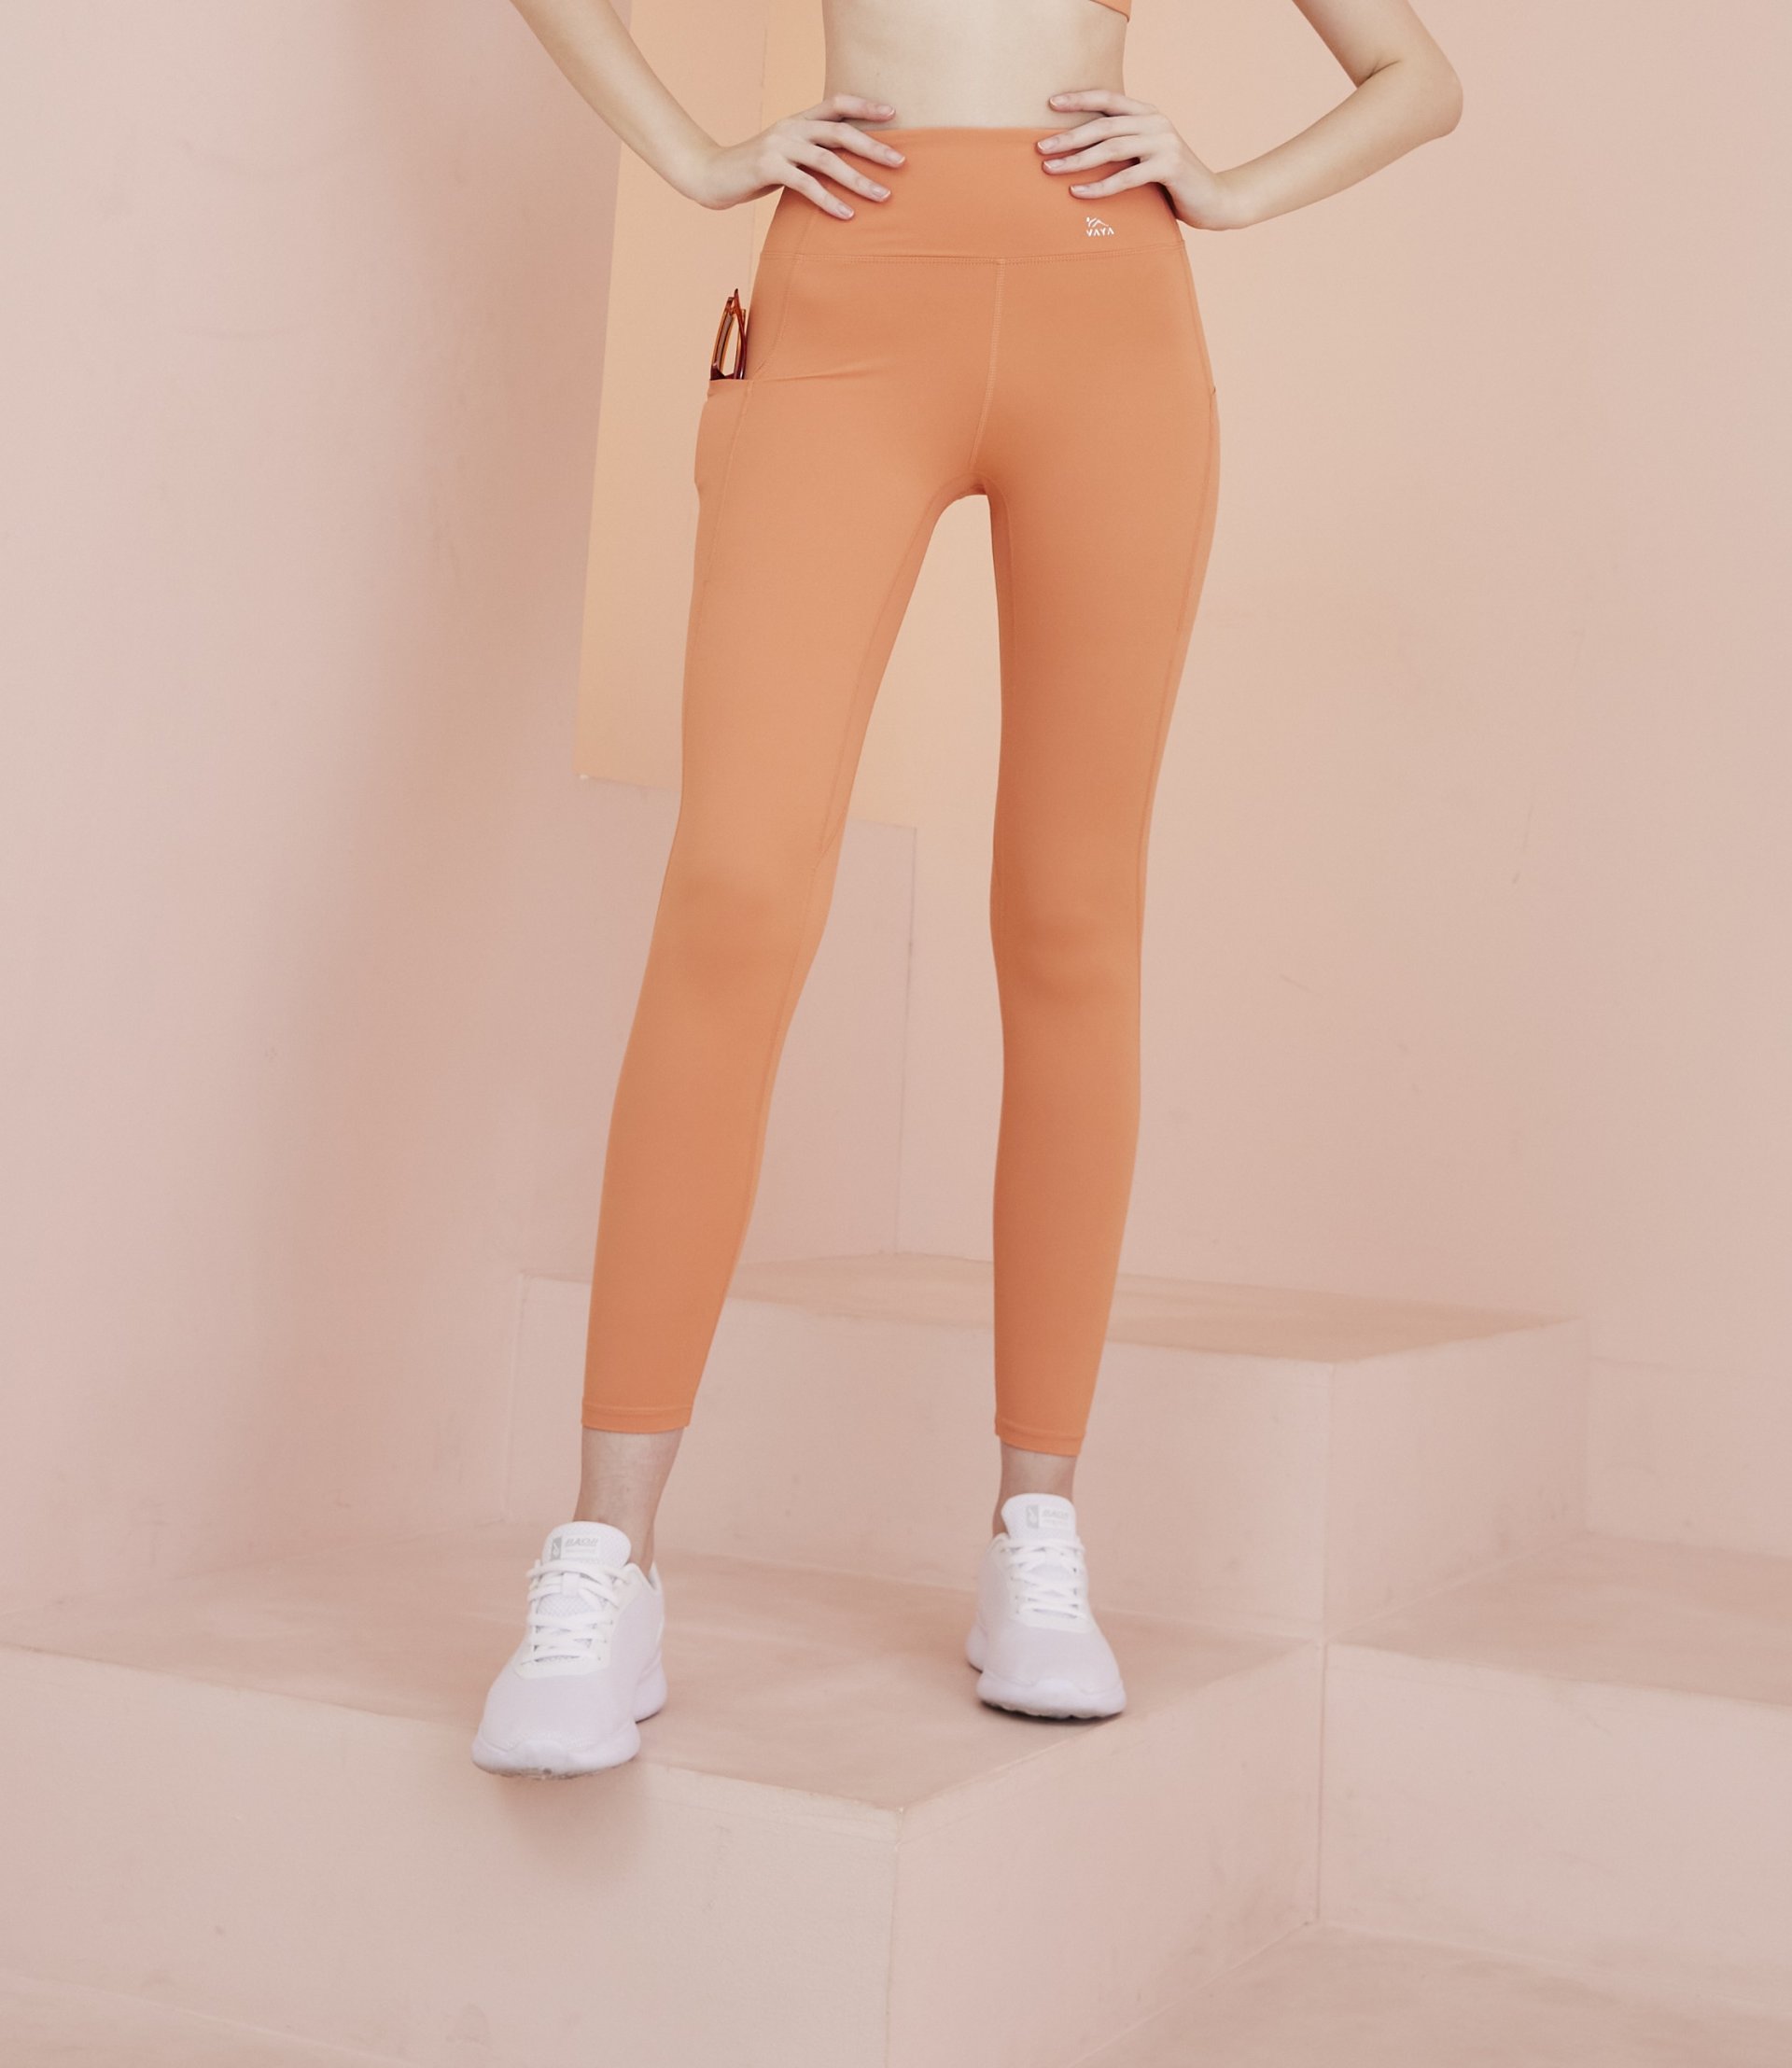 Victoria leggings - กางเกง